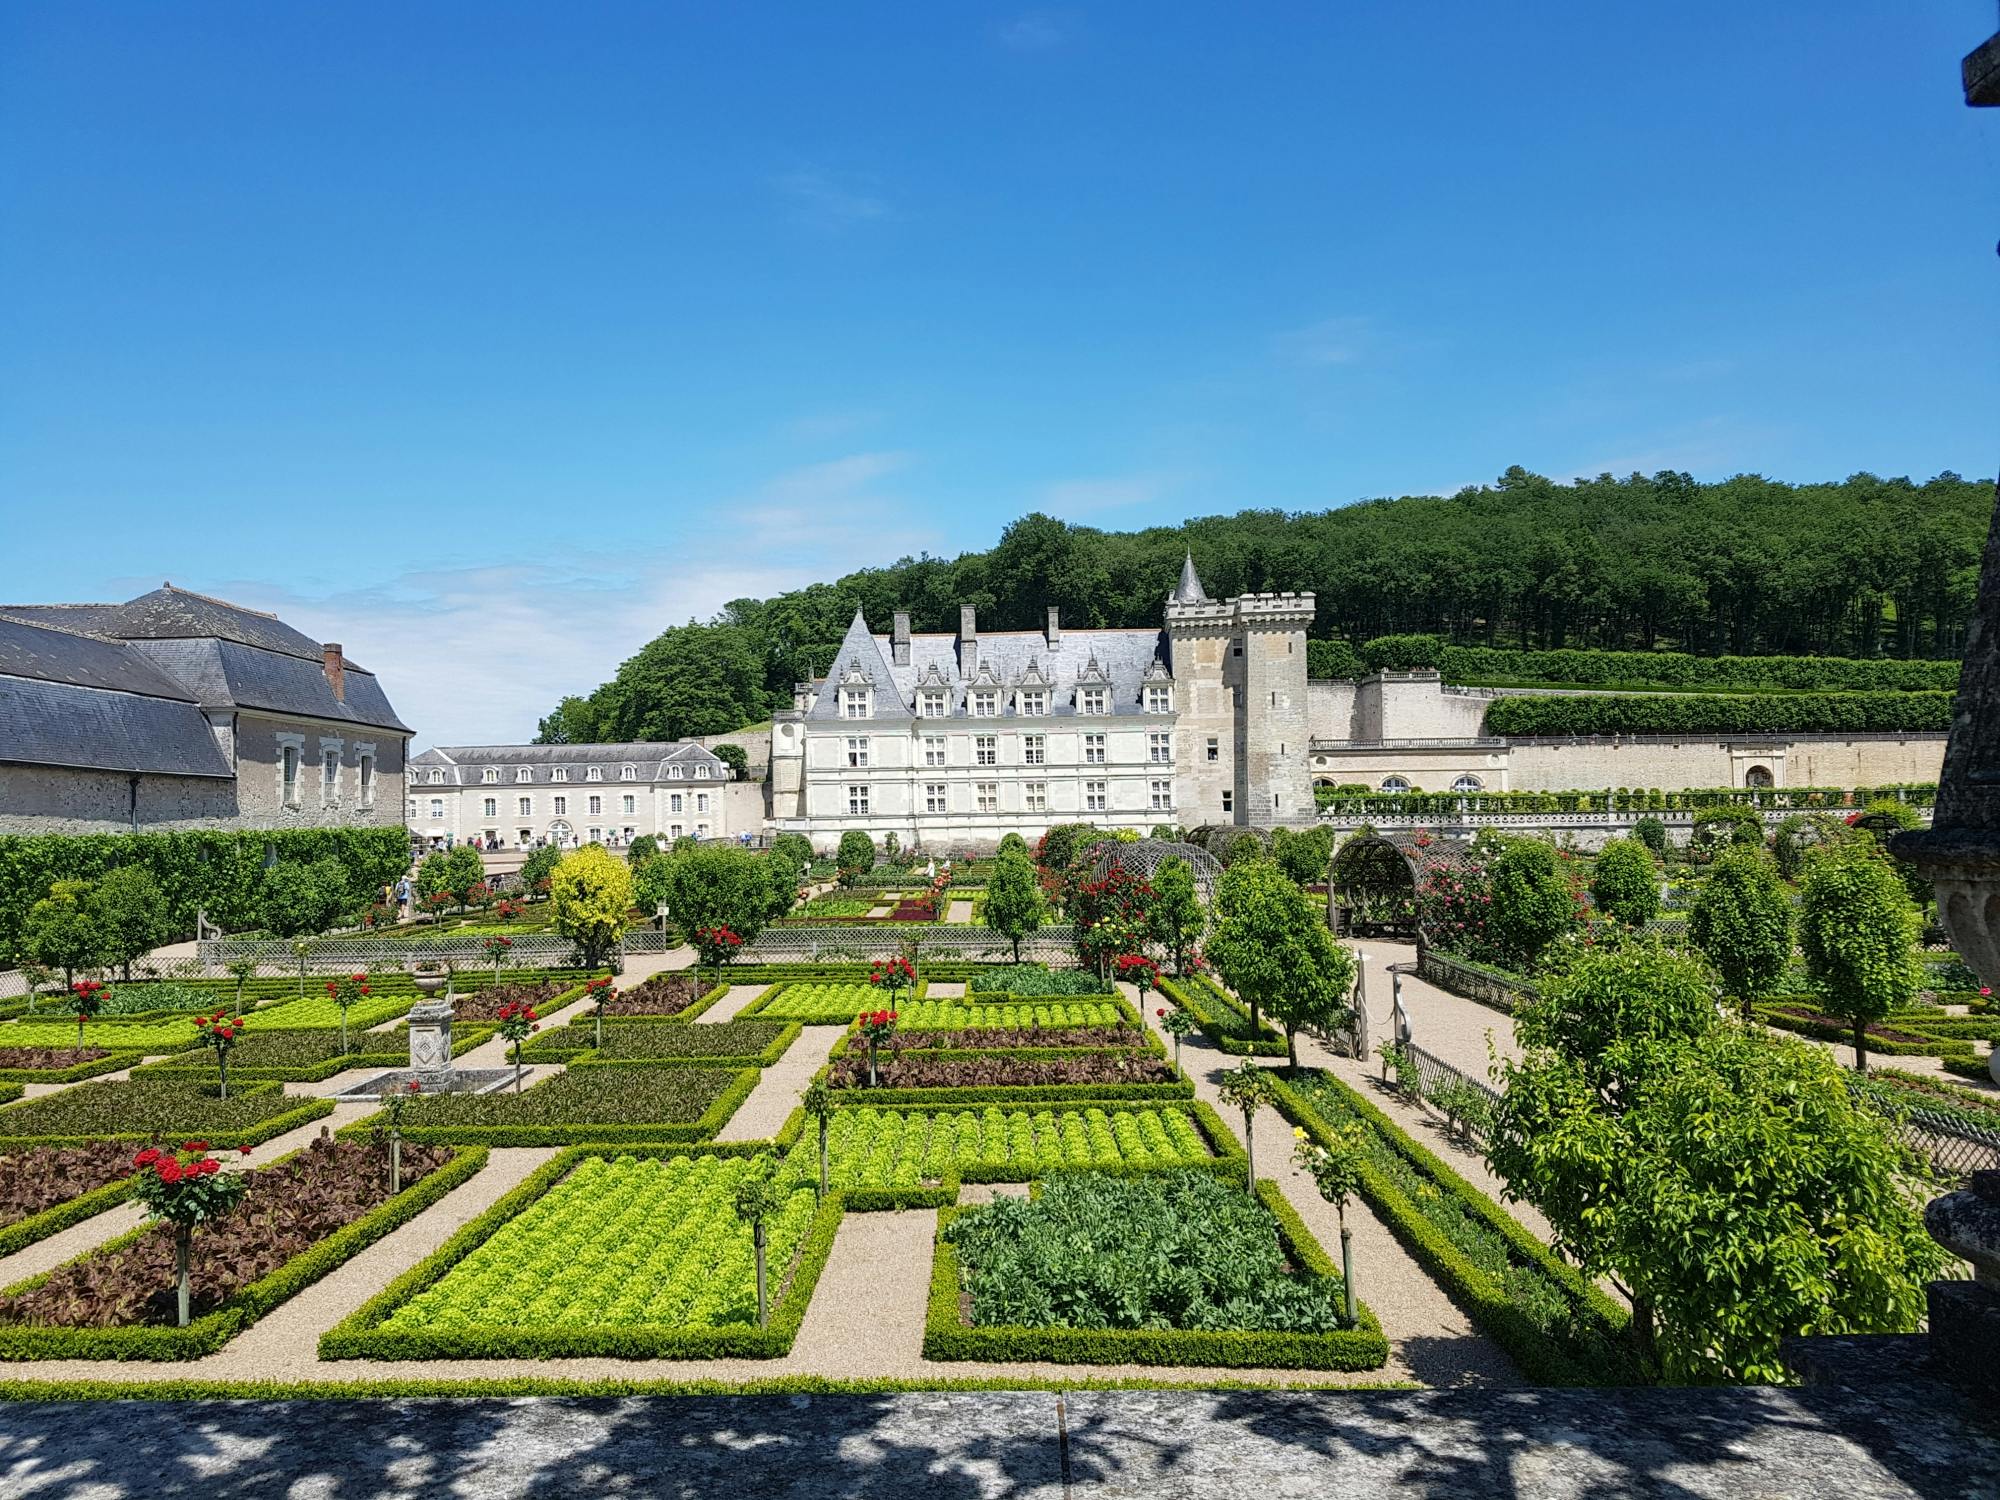 Visita guiada a los castillos de Villandry y Azay-le-Rideau desde Tours